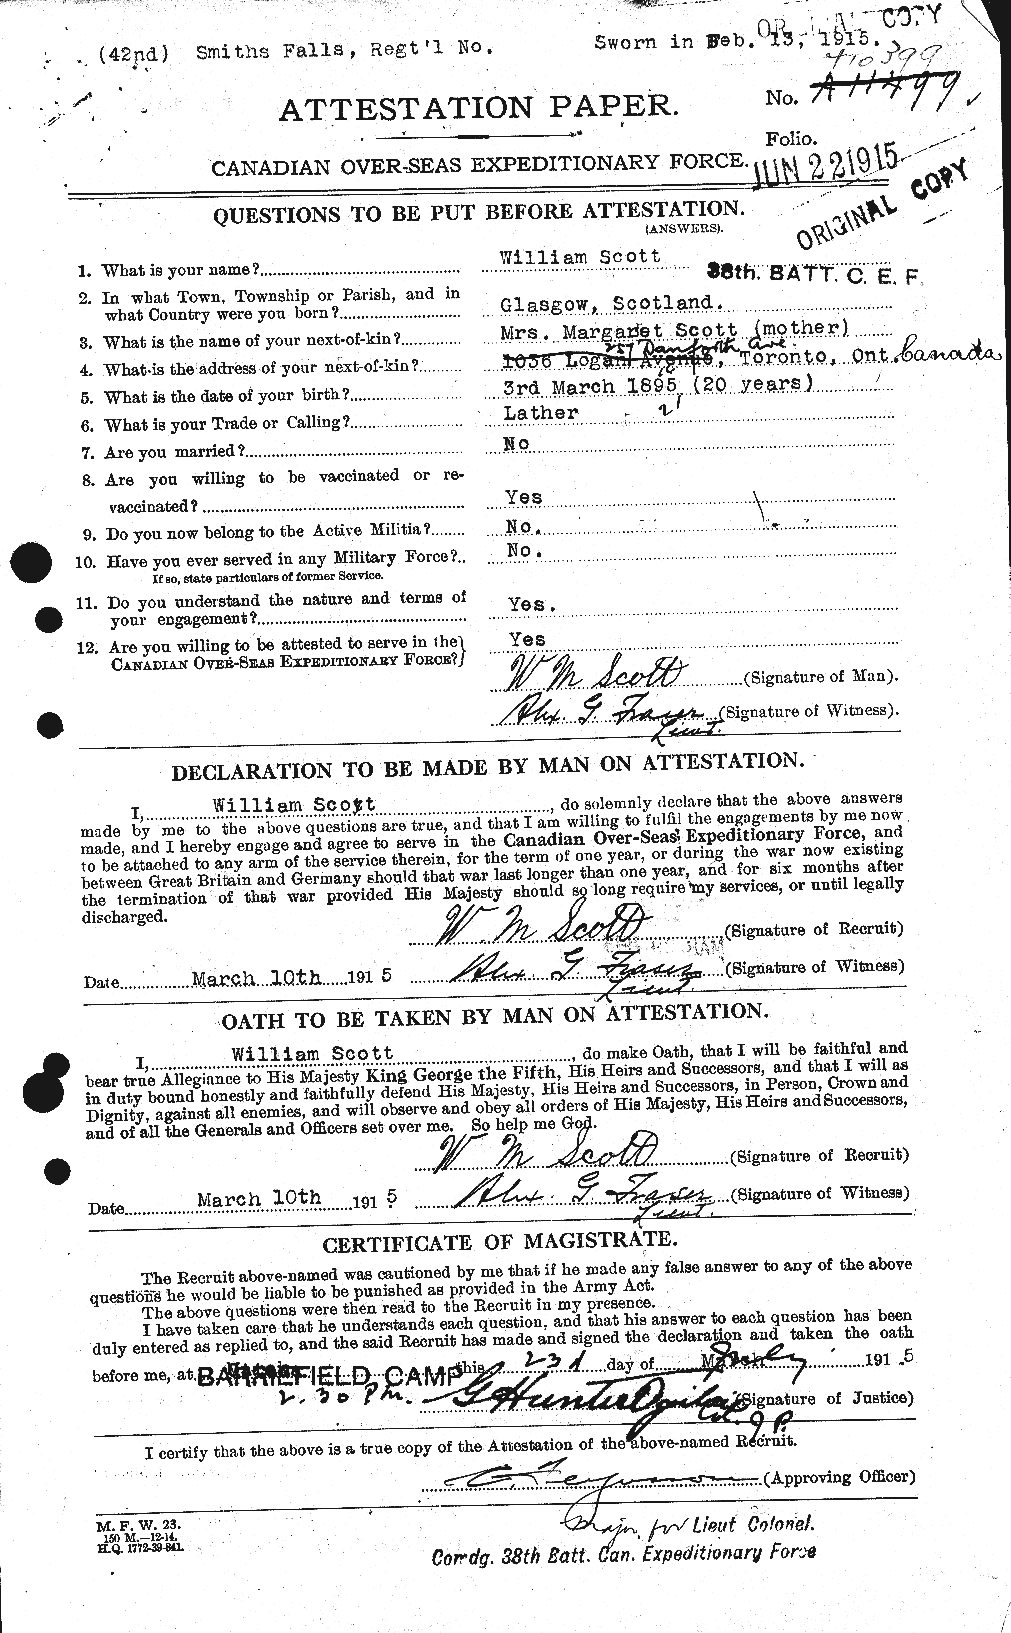 Dossiers du Personnel de la Première Guerre mondiale - CEC 087369a